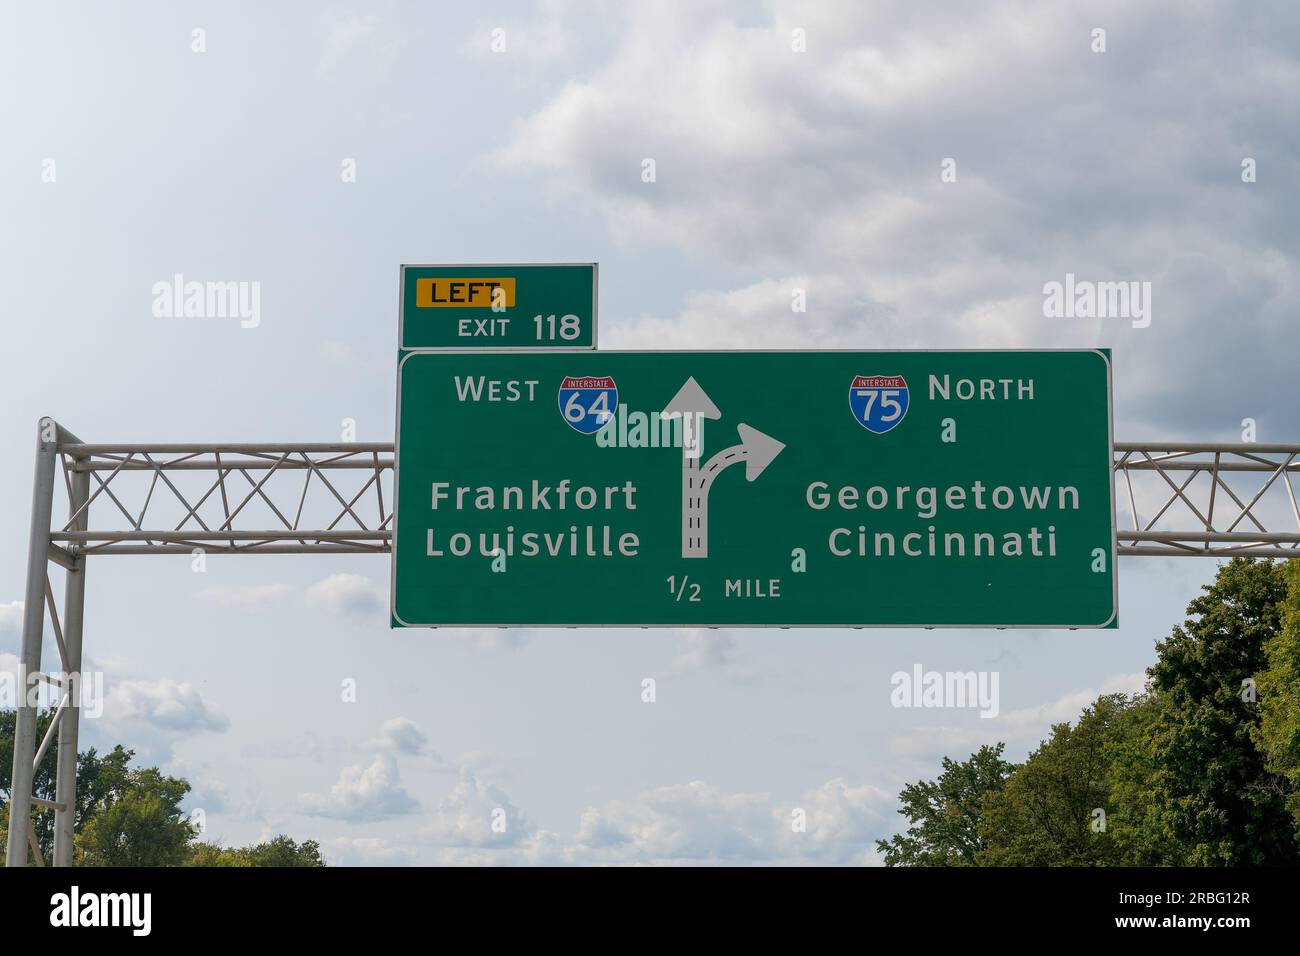 Lexington, KY - 10 septembre 2021 : panneau pour gauche sortie 118 pour I64 Ouest vers Frankfort et Lousiville, et continuer sur I75 Nord vers Georgetown et Banque D'Images